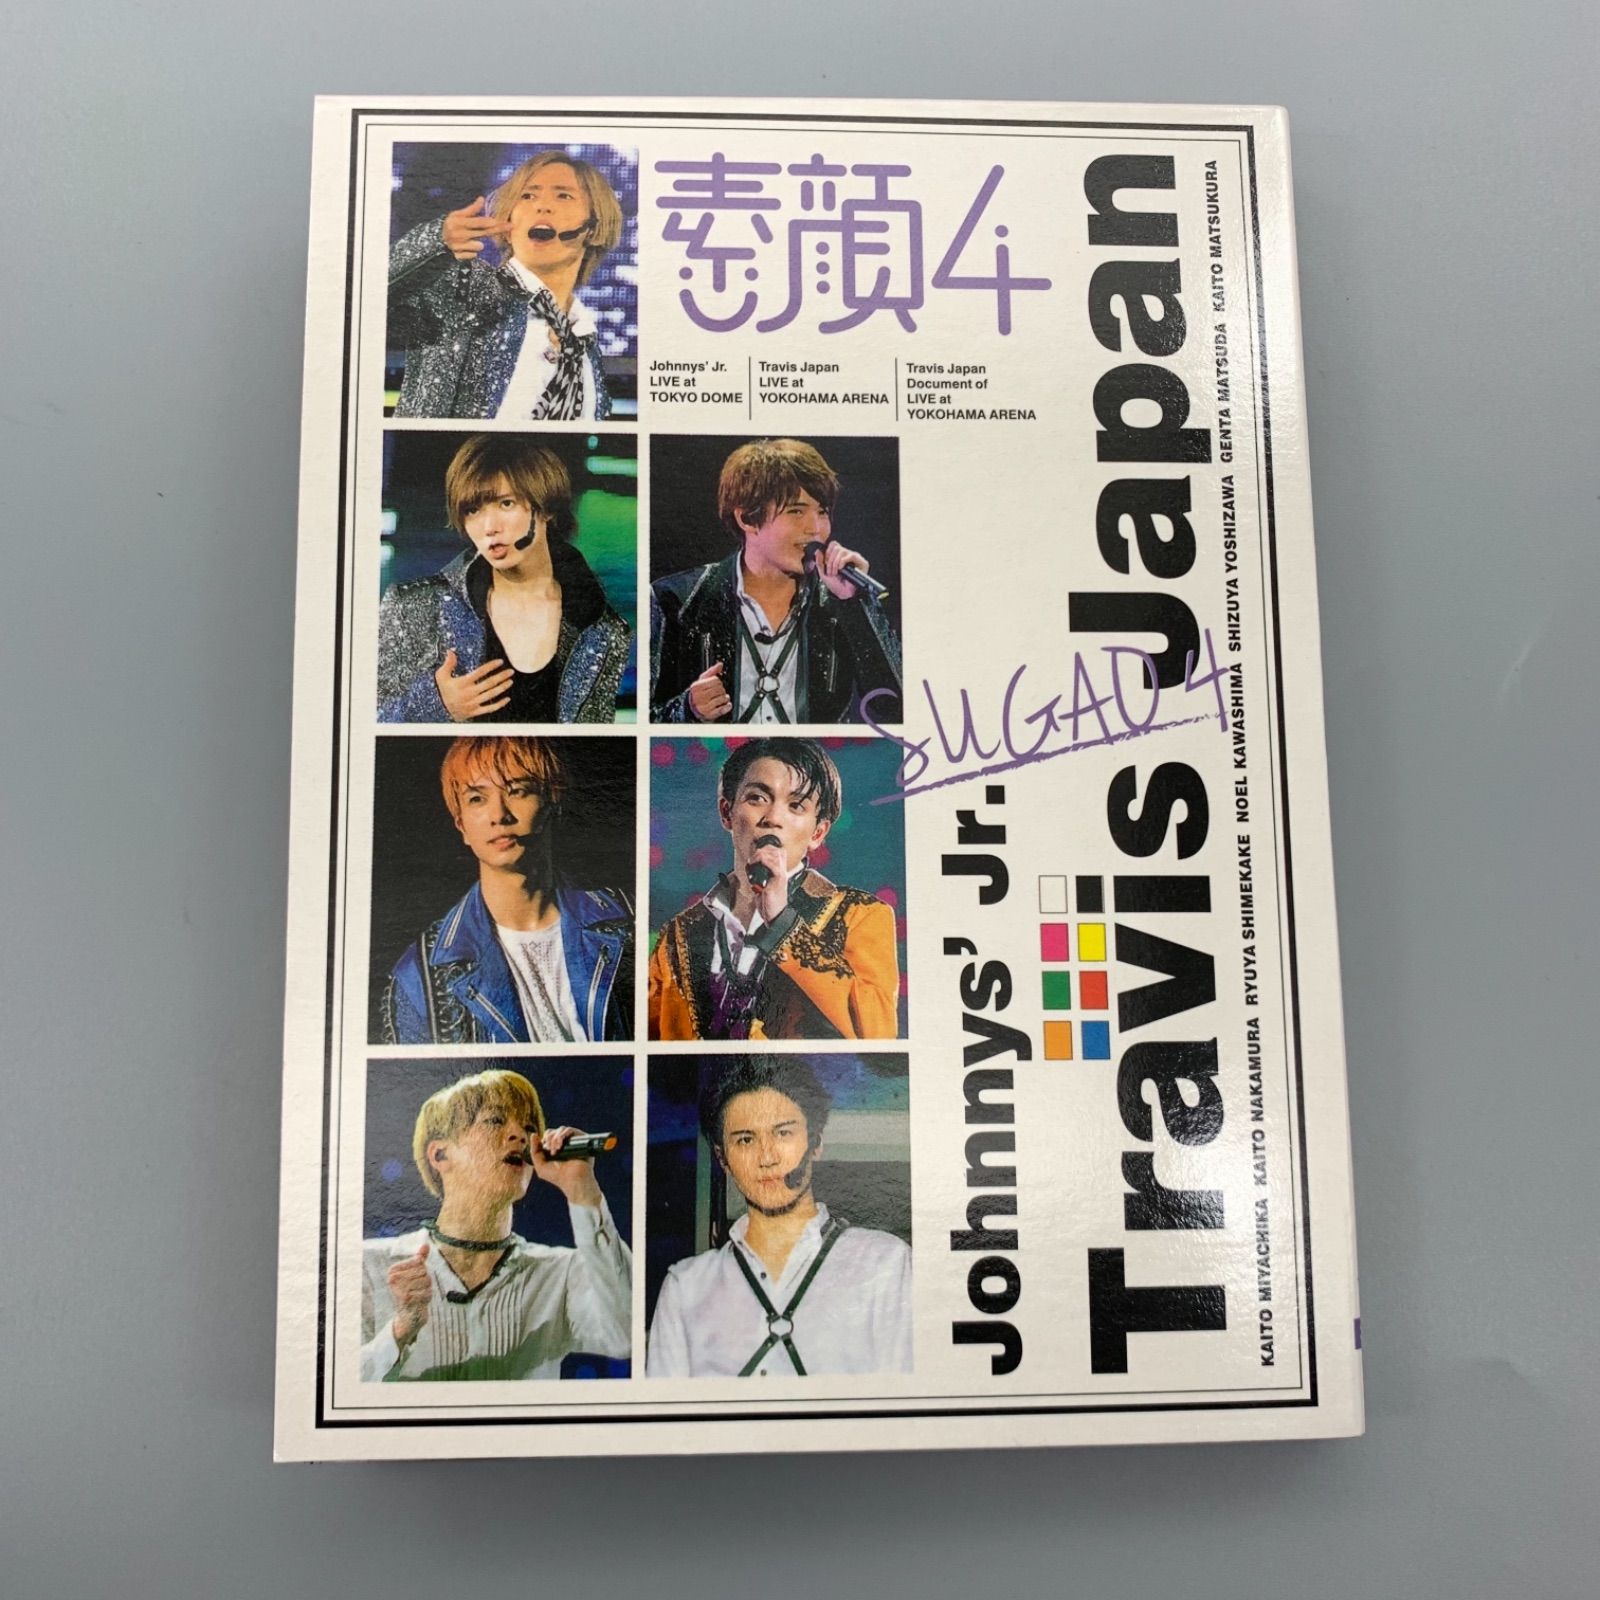 素顔4 TravisJapan盤 DVD - メルカリ